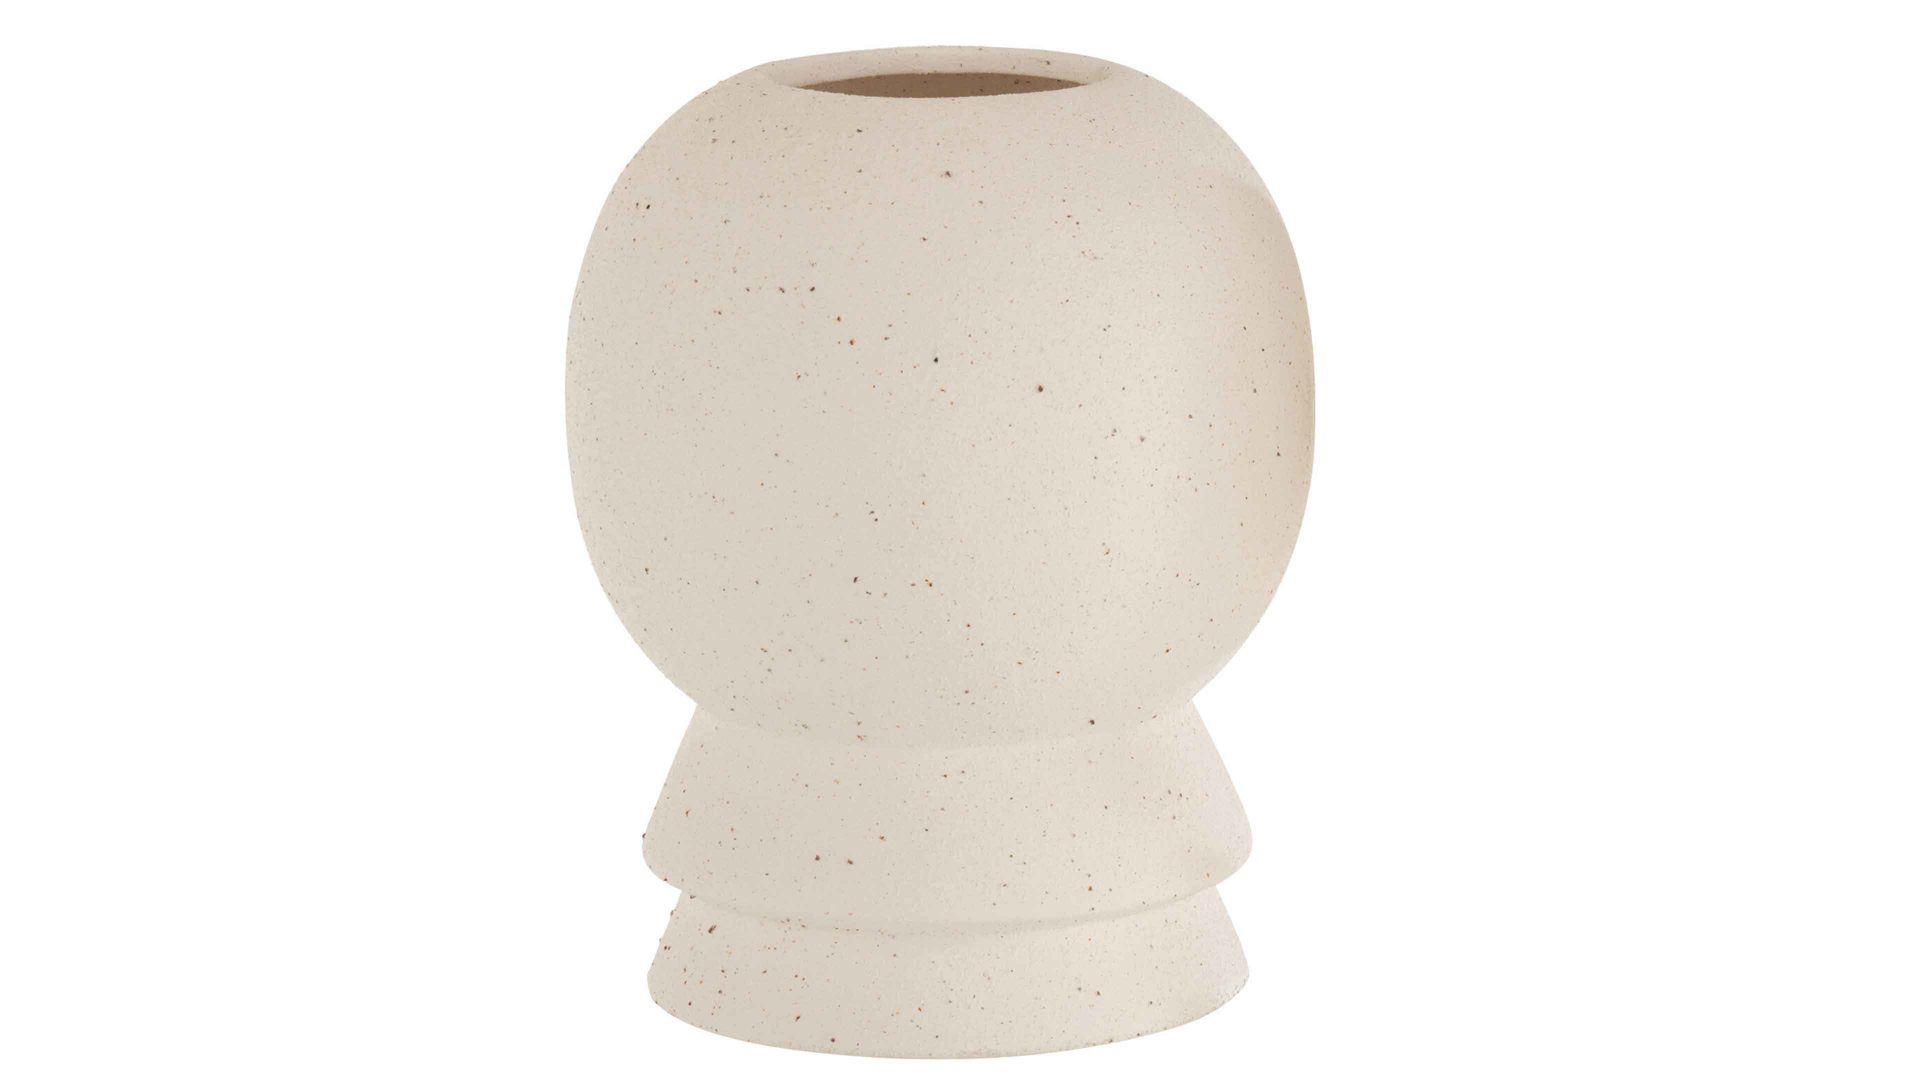 Vase Interliving BEST BUDDYS! aus Keramik in Beige Interliving BEST BUDDYS! Vase Olivia gesprenkeltes weißes Steinzeug - Durchmesser ca. 17 cm